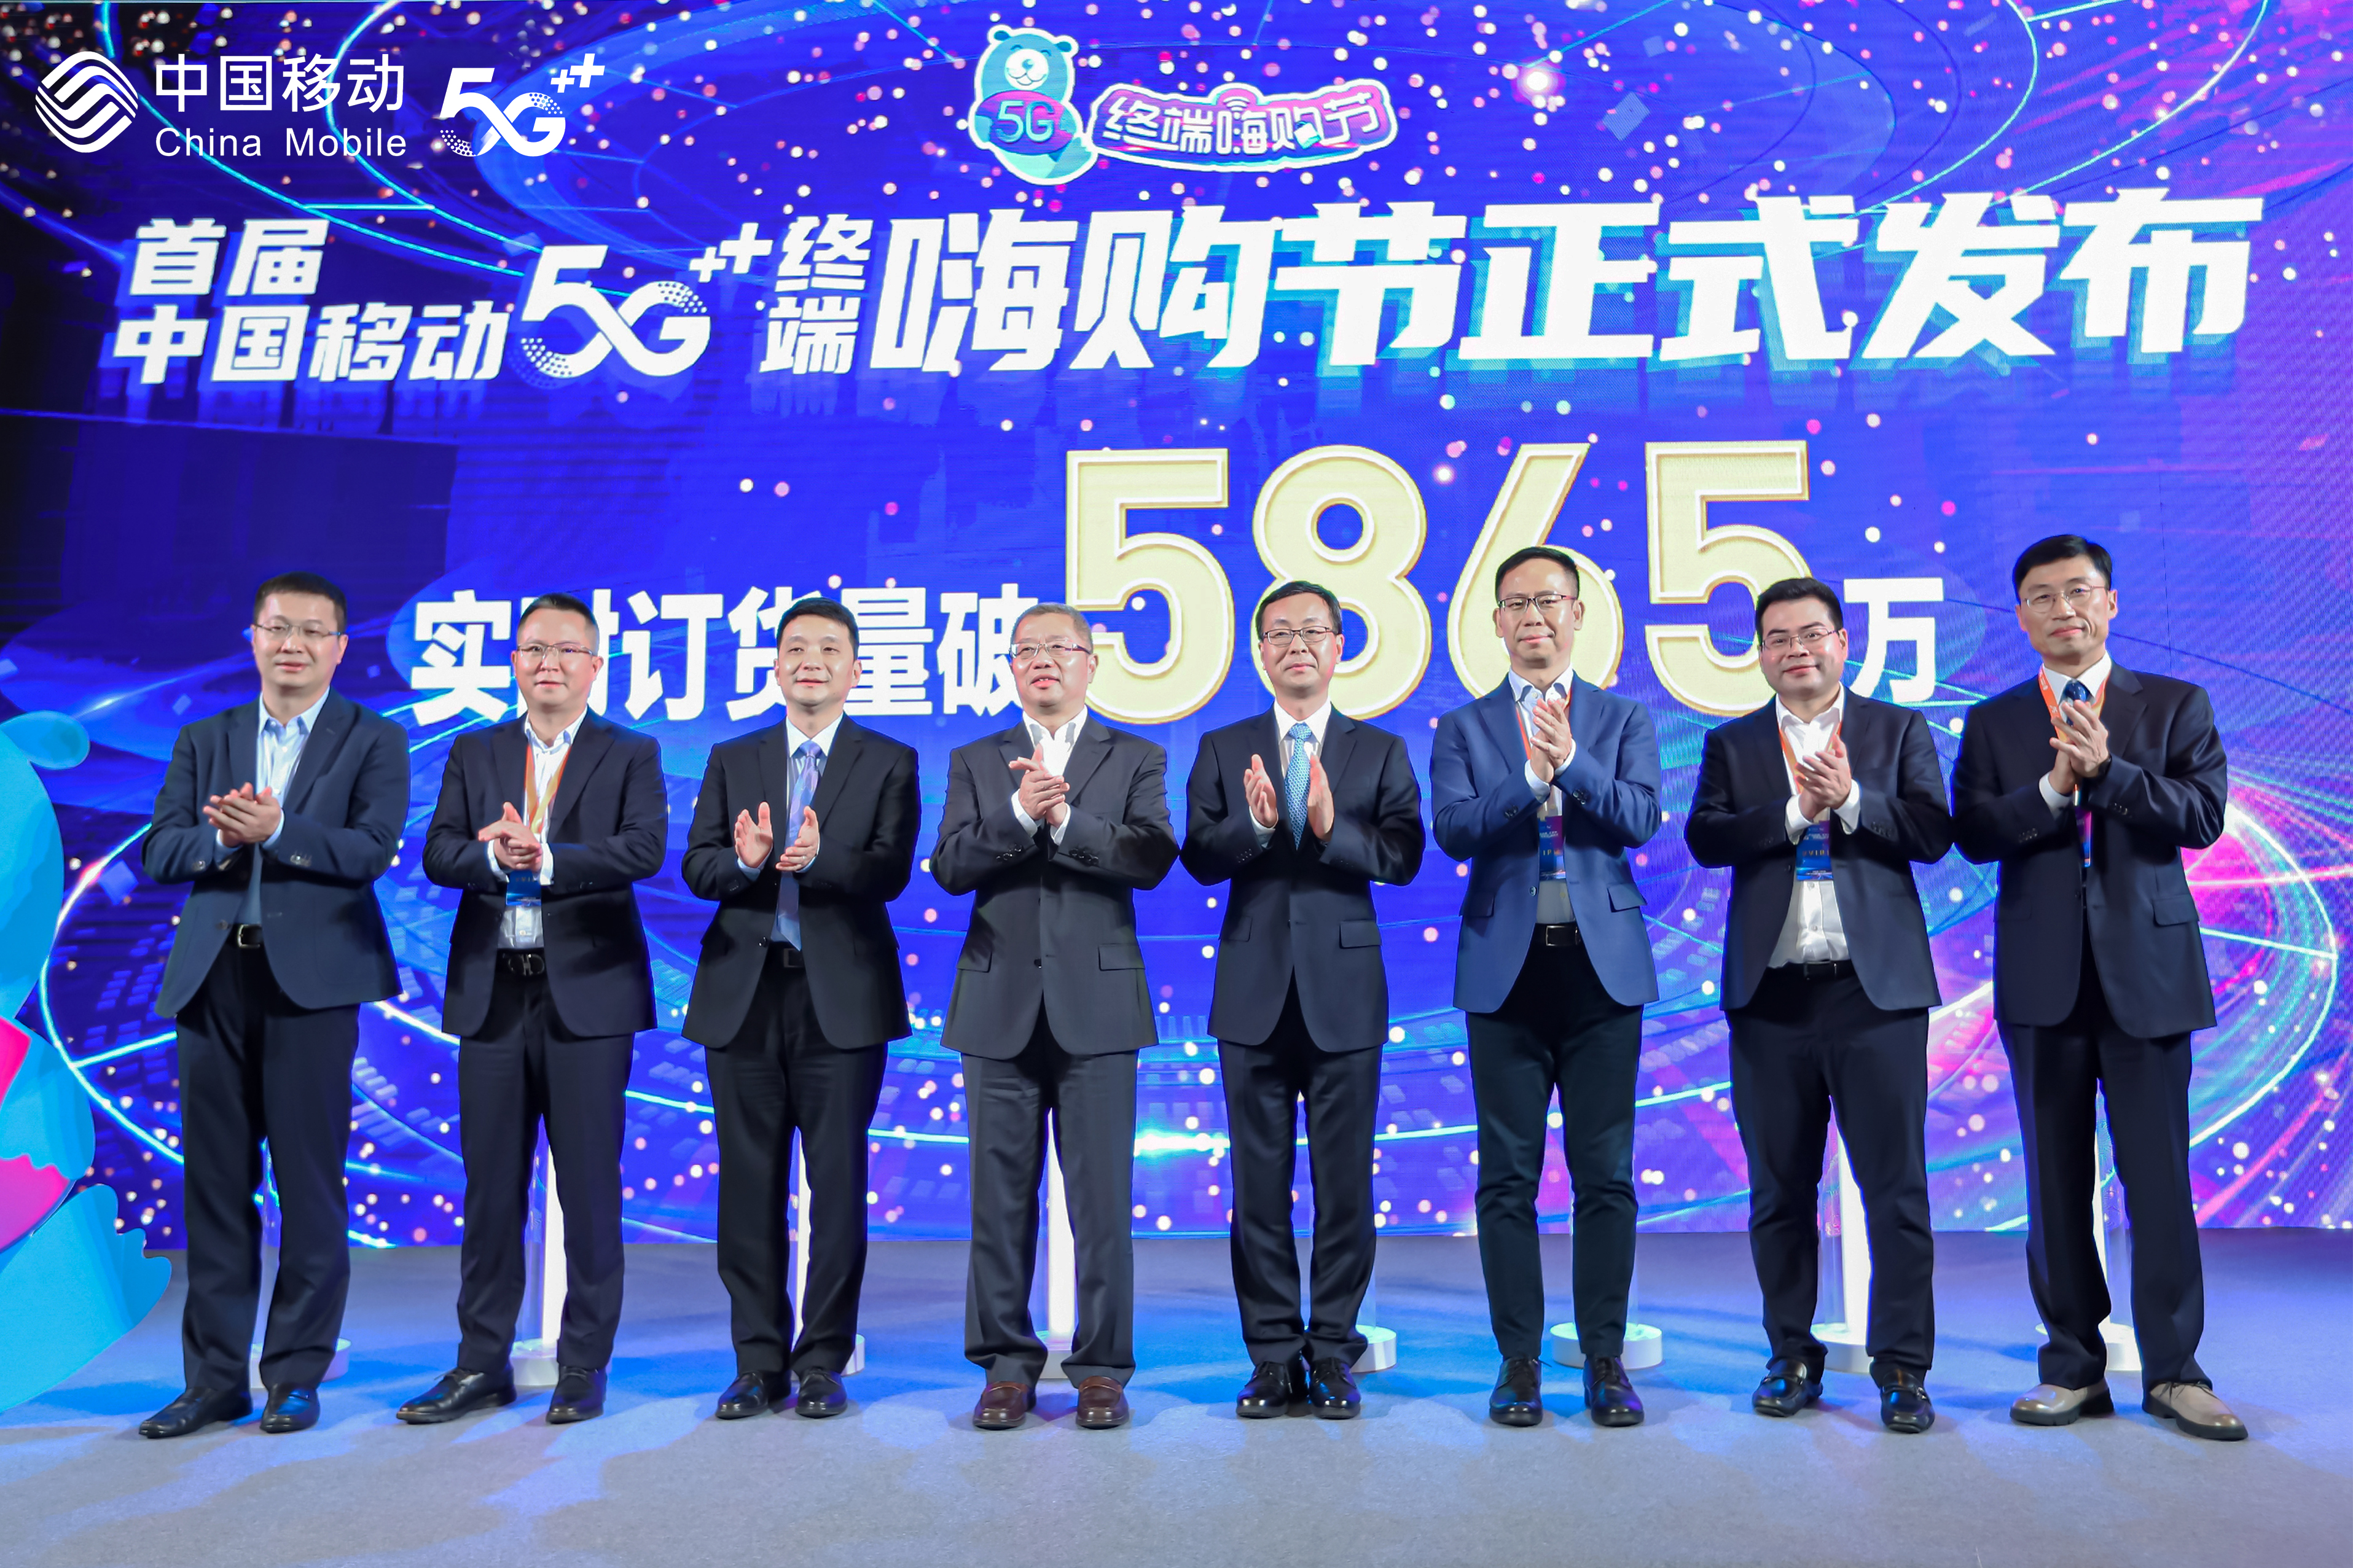 中国移动发布2021年5G终端产品暨销售策略